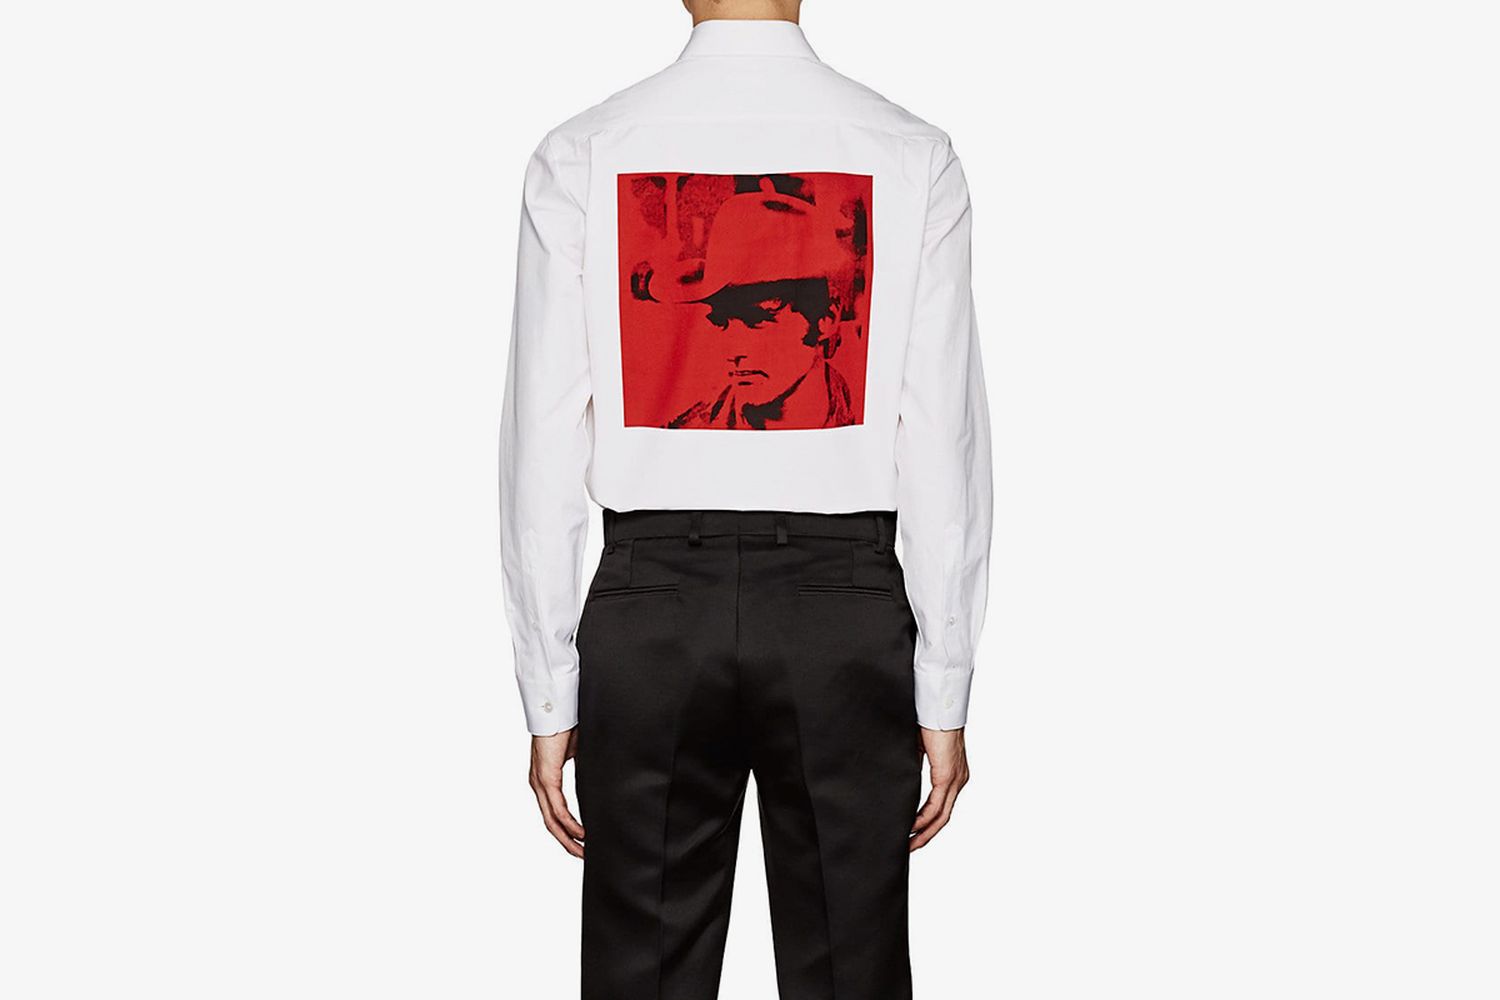 Dennis Hopper Shirt